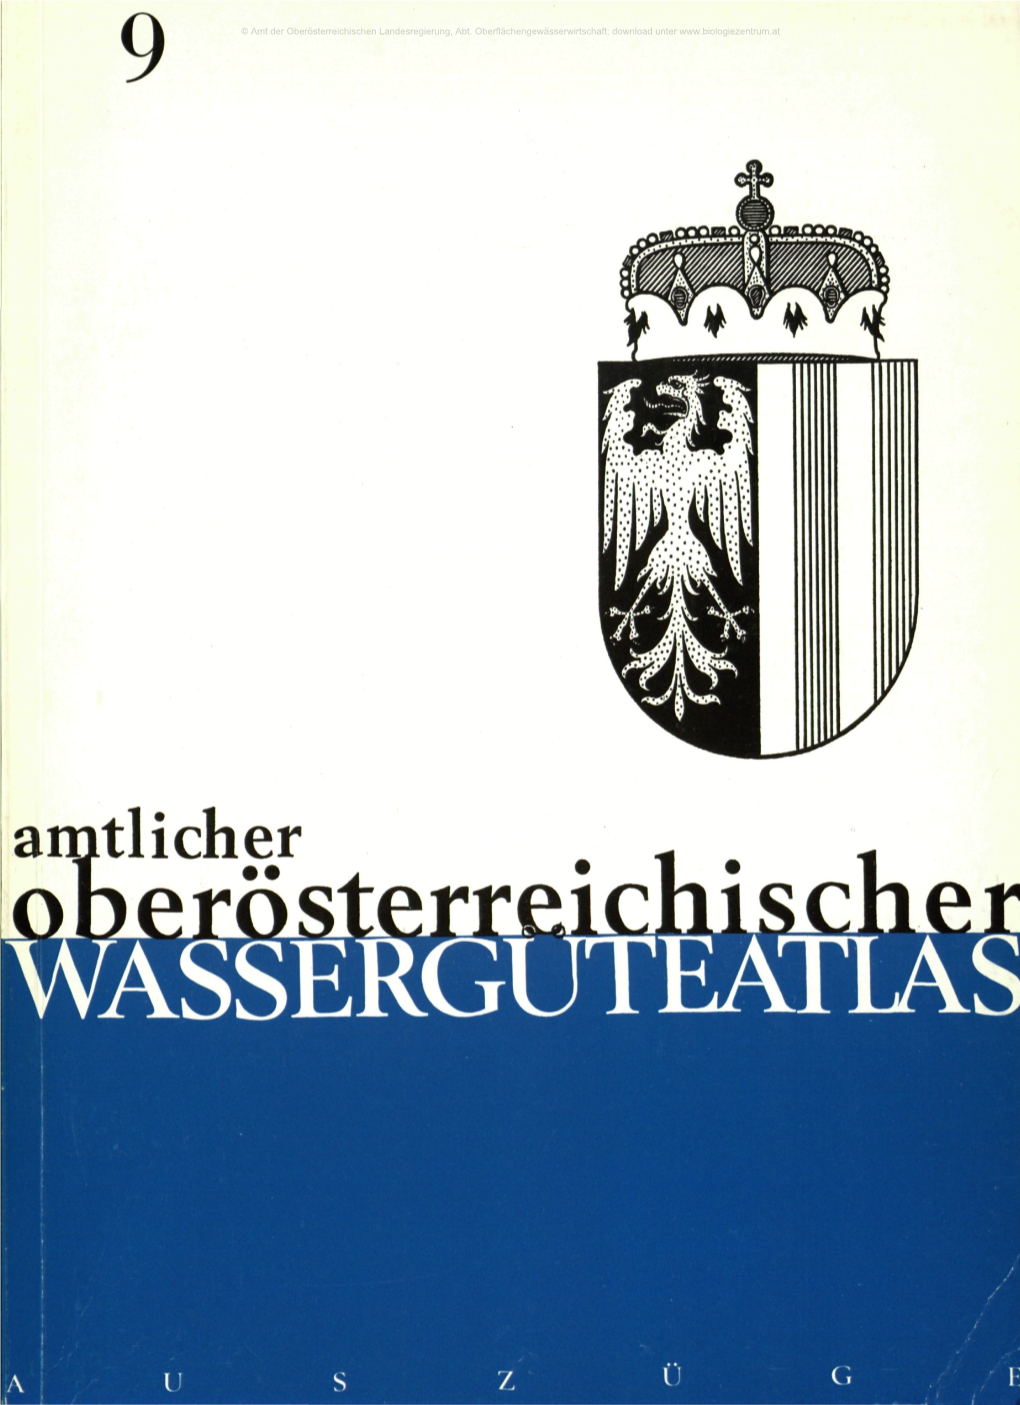 Amtlicher Wasserguteana © Amt Der Oberösterreichischen Landesregierung, Abt